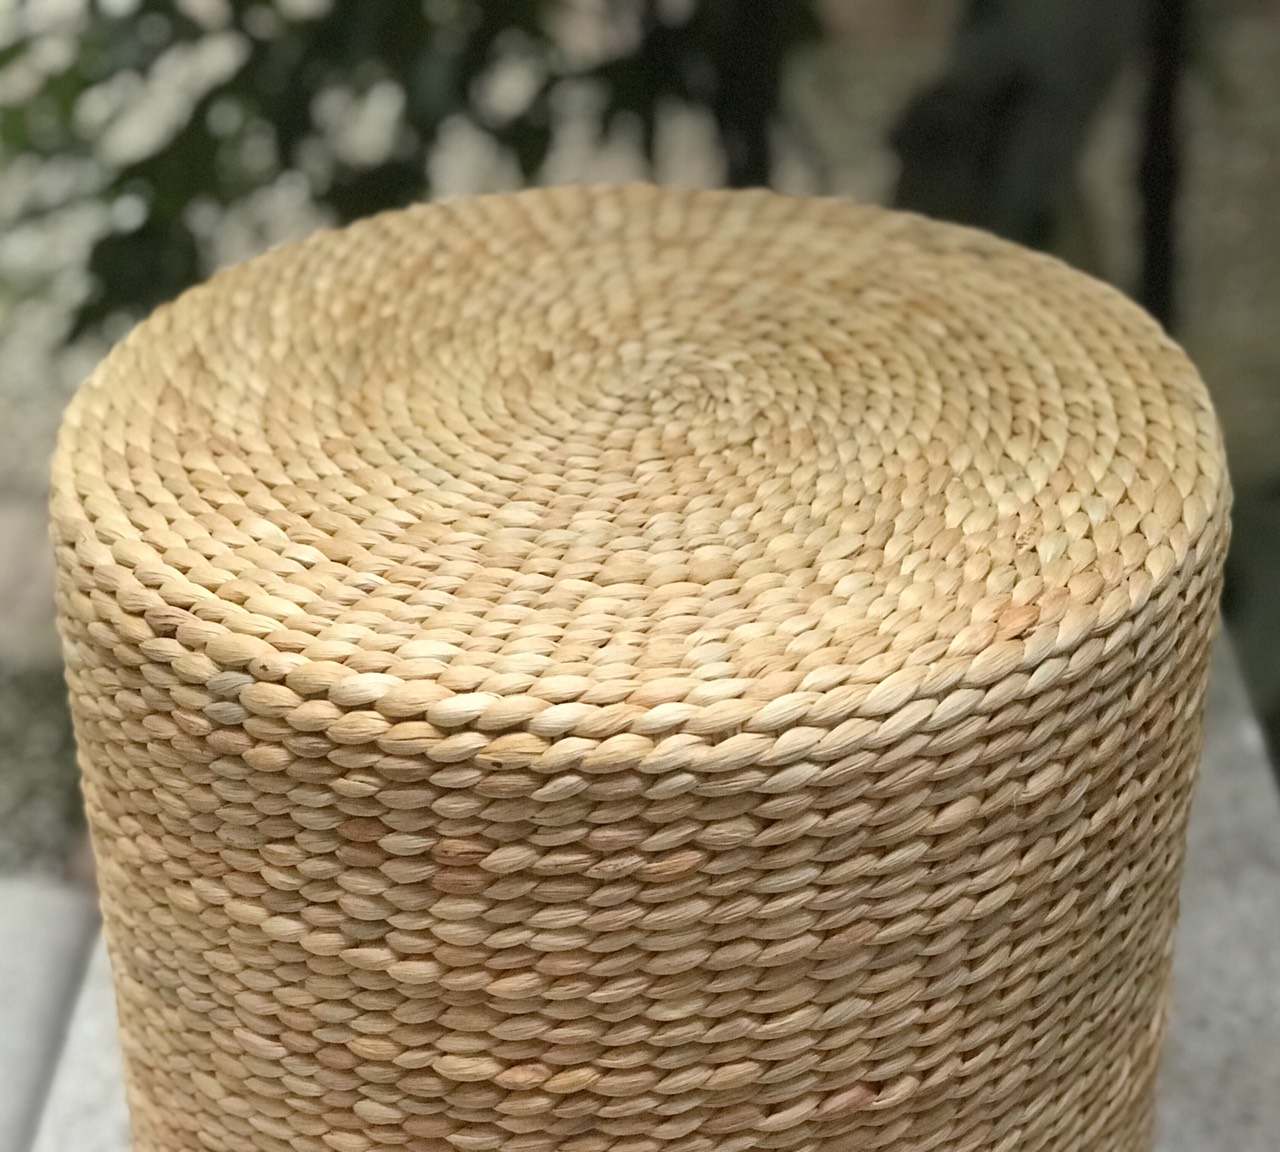 Ghế đôn ngồi lục bình đa năng hình tụ tròn dùng để ngồi hoặc làm bàn trà trang trí decor homestay hàng thủ công Việt Nam